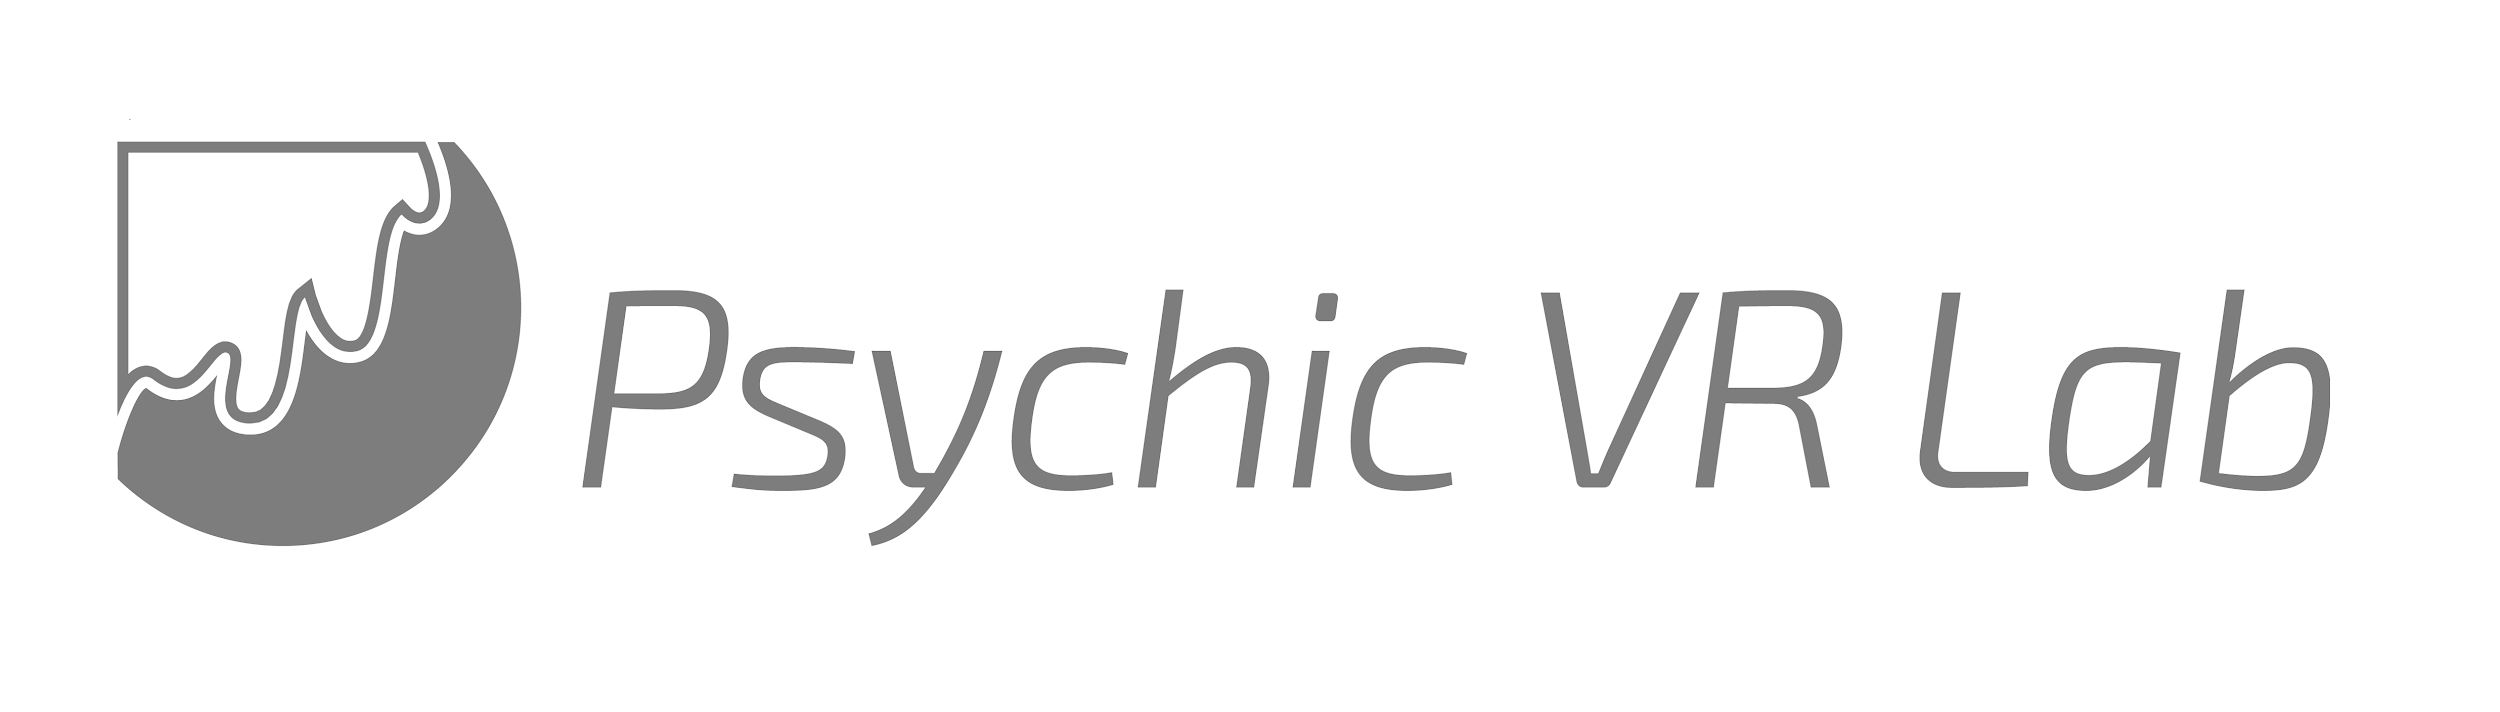 Psychic VR Lab　ロゴイメージ画像